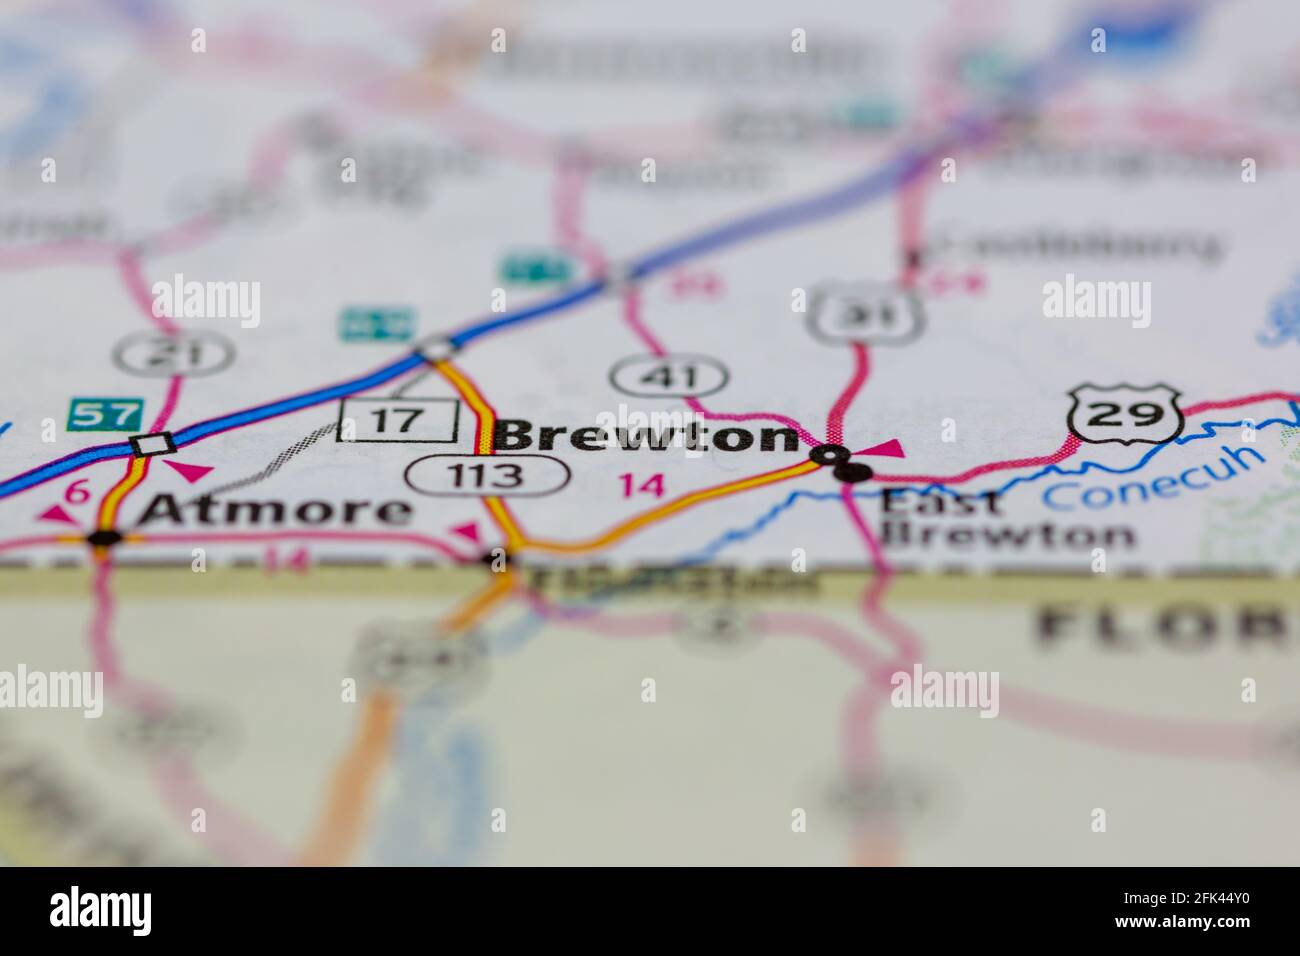 Brewton Alabama USA mostrato su una mappa geografica o su una strada mappa Foto Stock